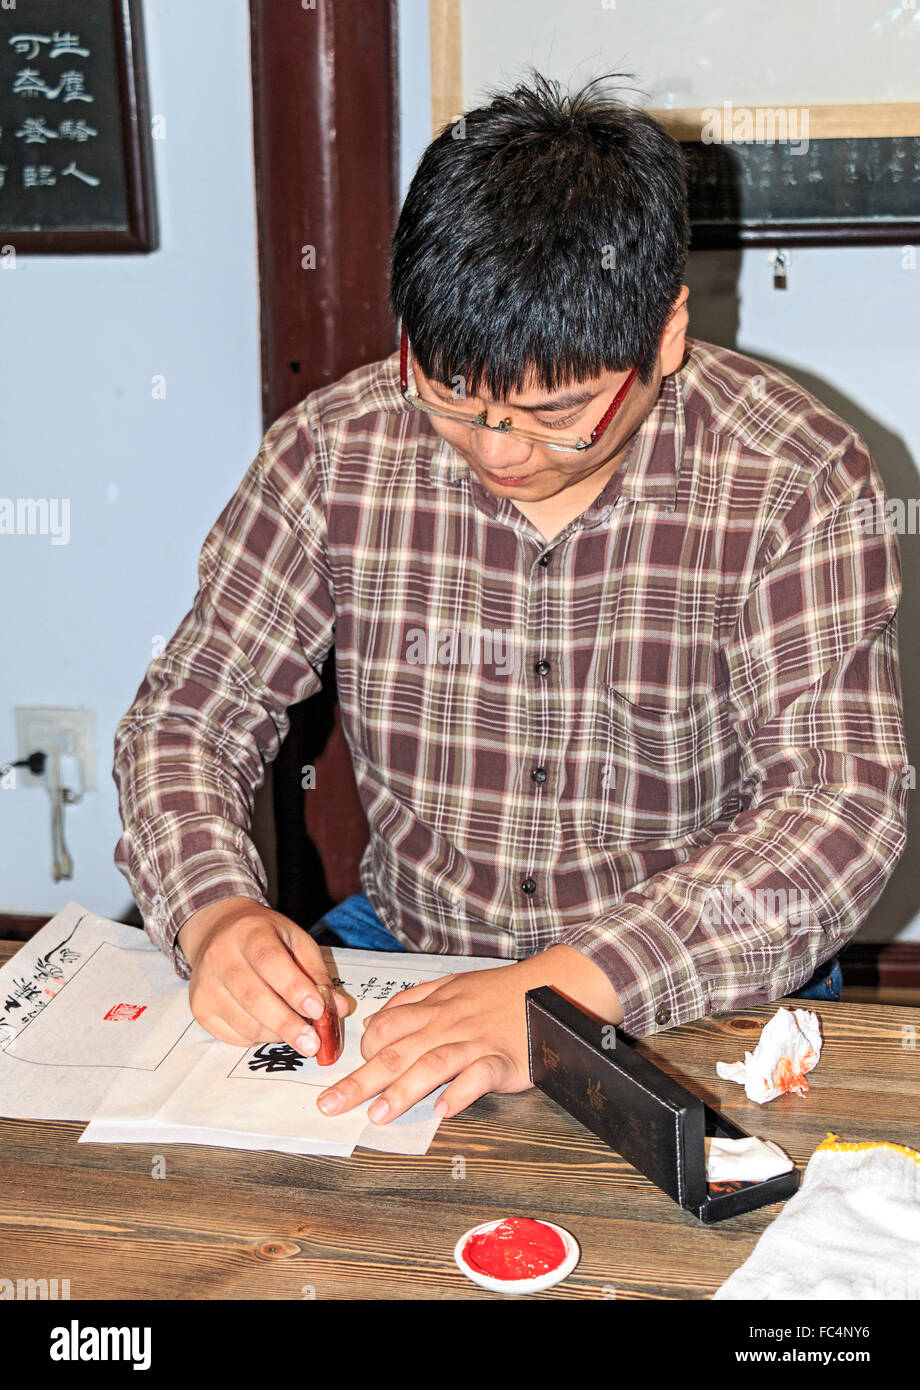 Wang Zhen, un maître graveur, enseigne aux élèves comment découper un joint ou joint de Xiling à hacher la société du graveur à Hangzhou, Chine. Banque D'Images